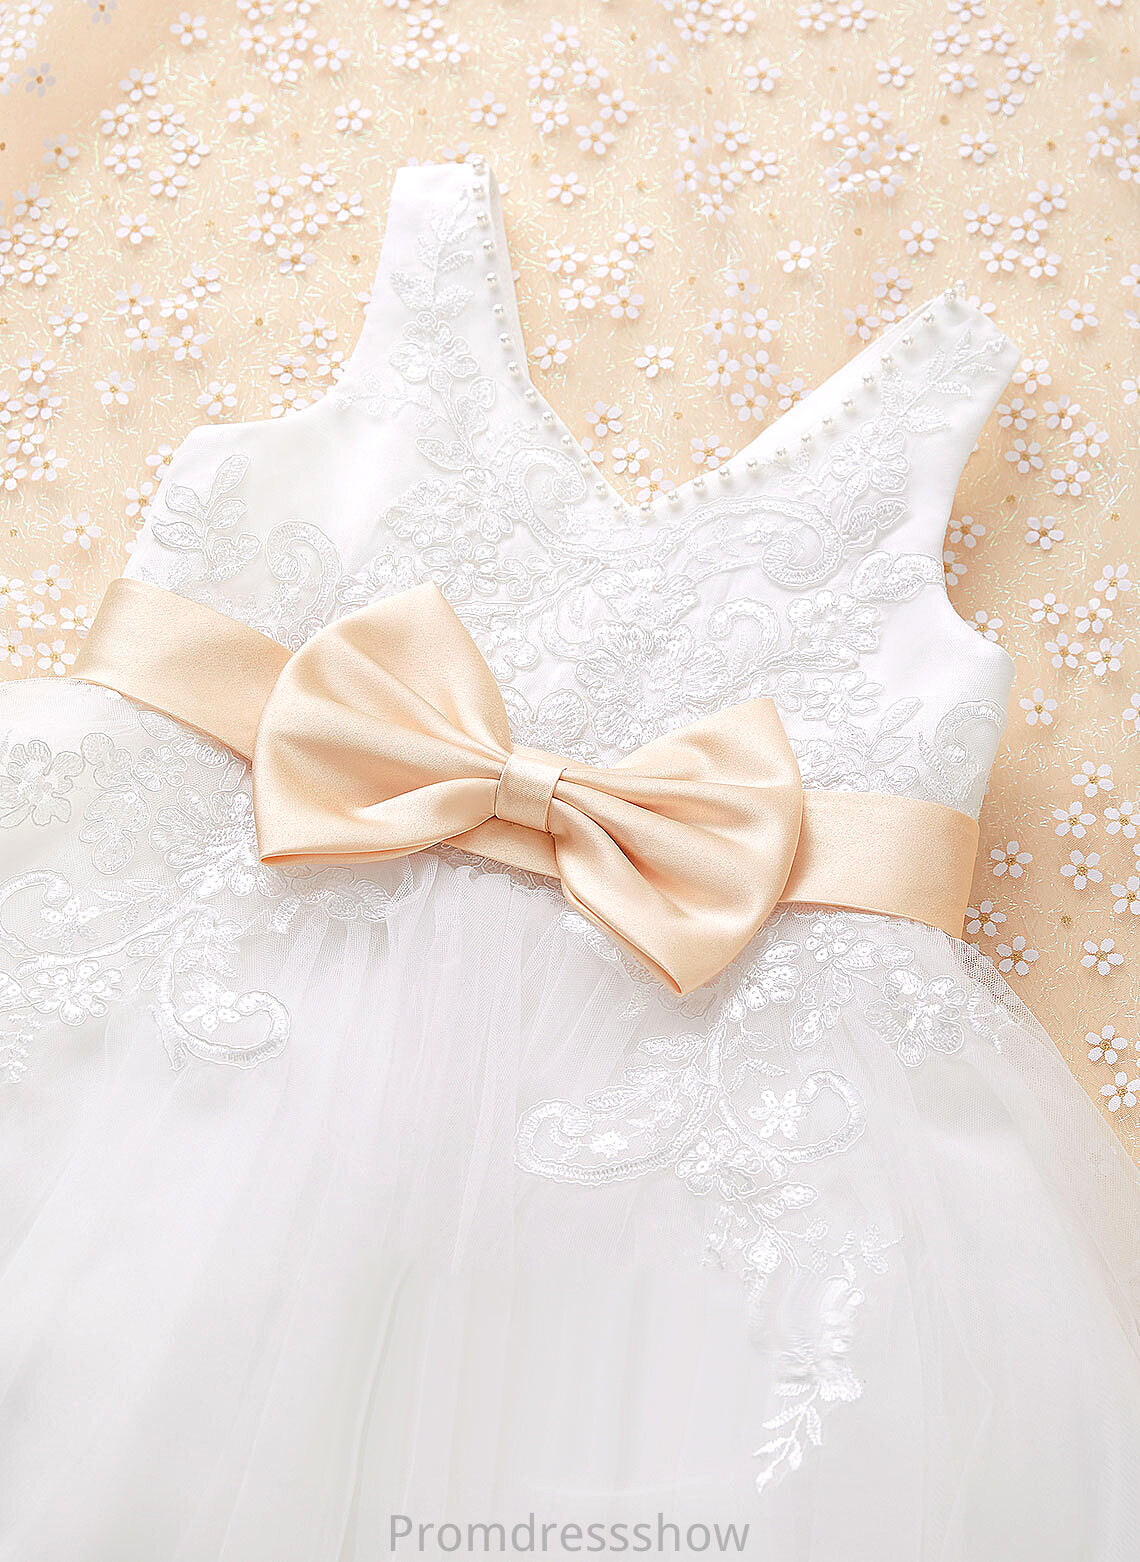 Tulle/Lace With Sleeveless A-Line V-neck Dress Girl - Rosa Flower Knee-length Sash/Beading/Bow(s) Flower Girl Dresses